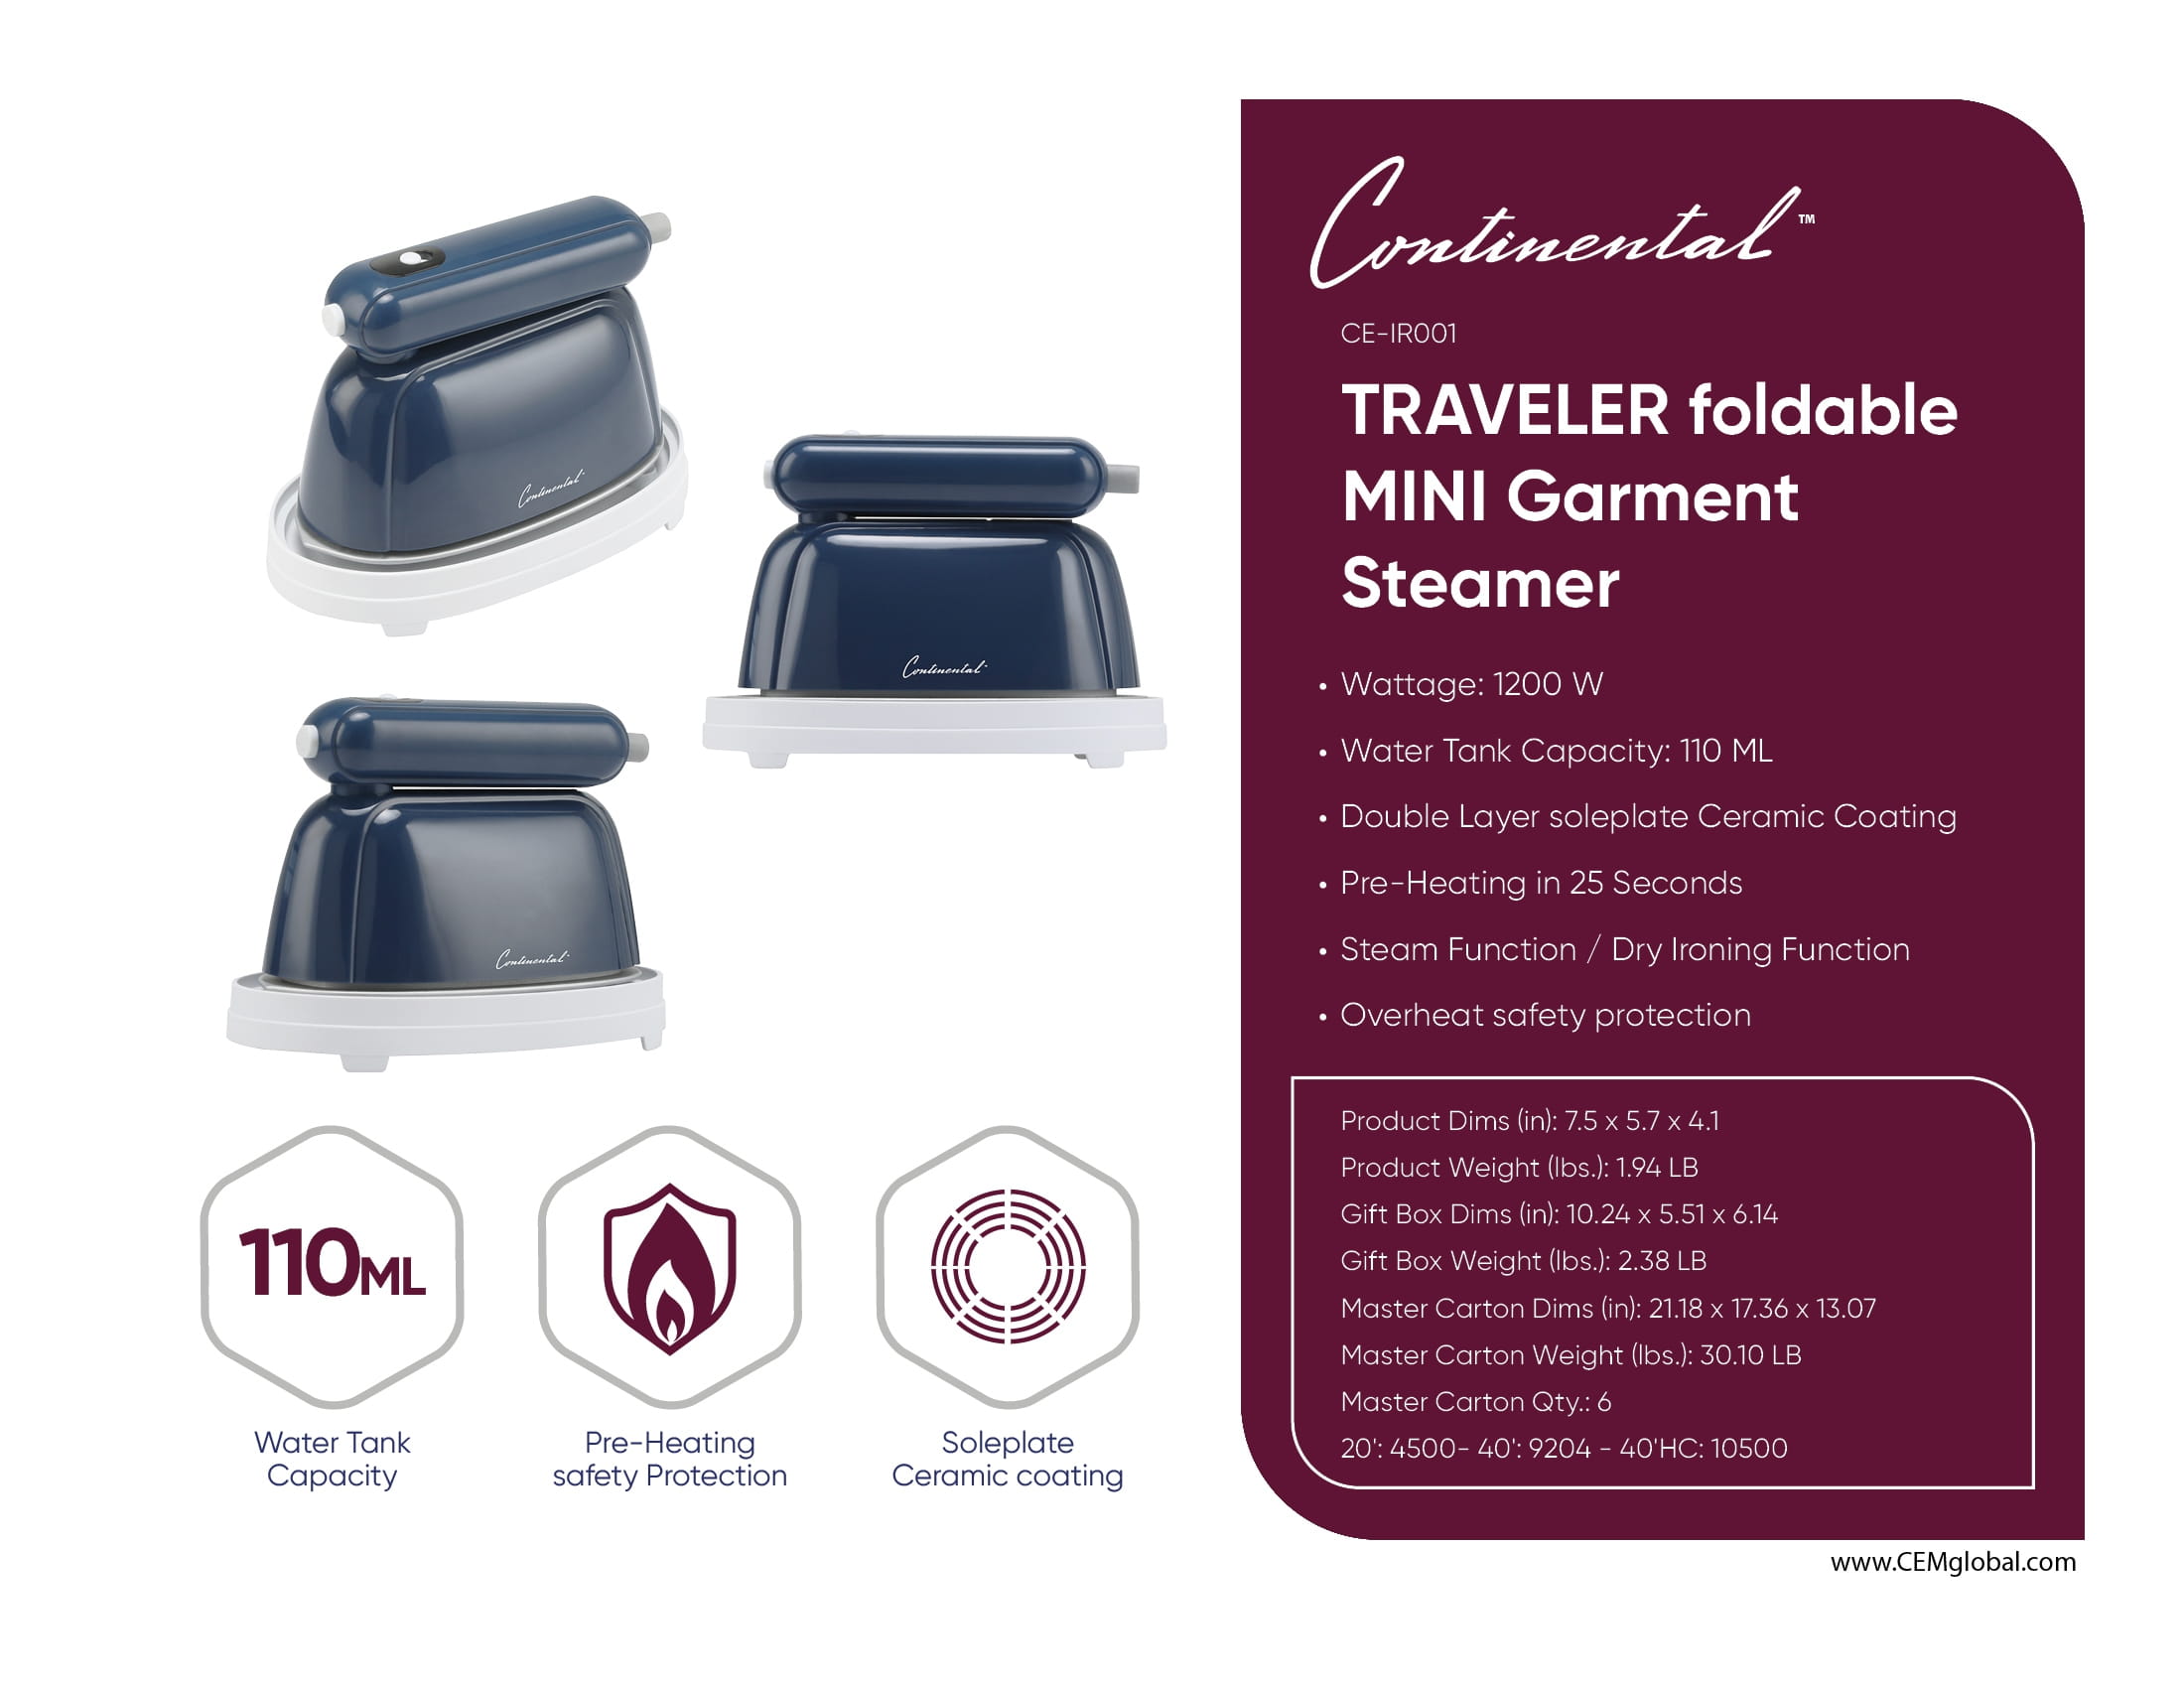 Traveler foldable MINI Garment Steamer